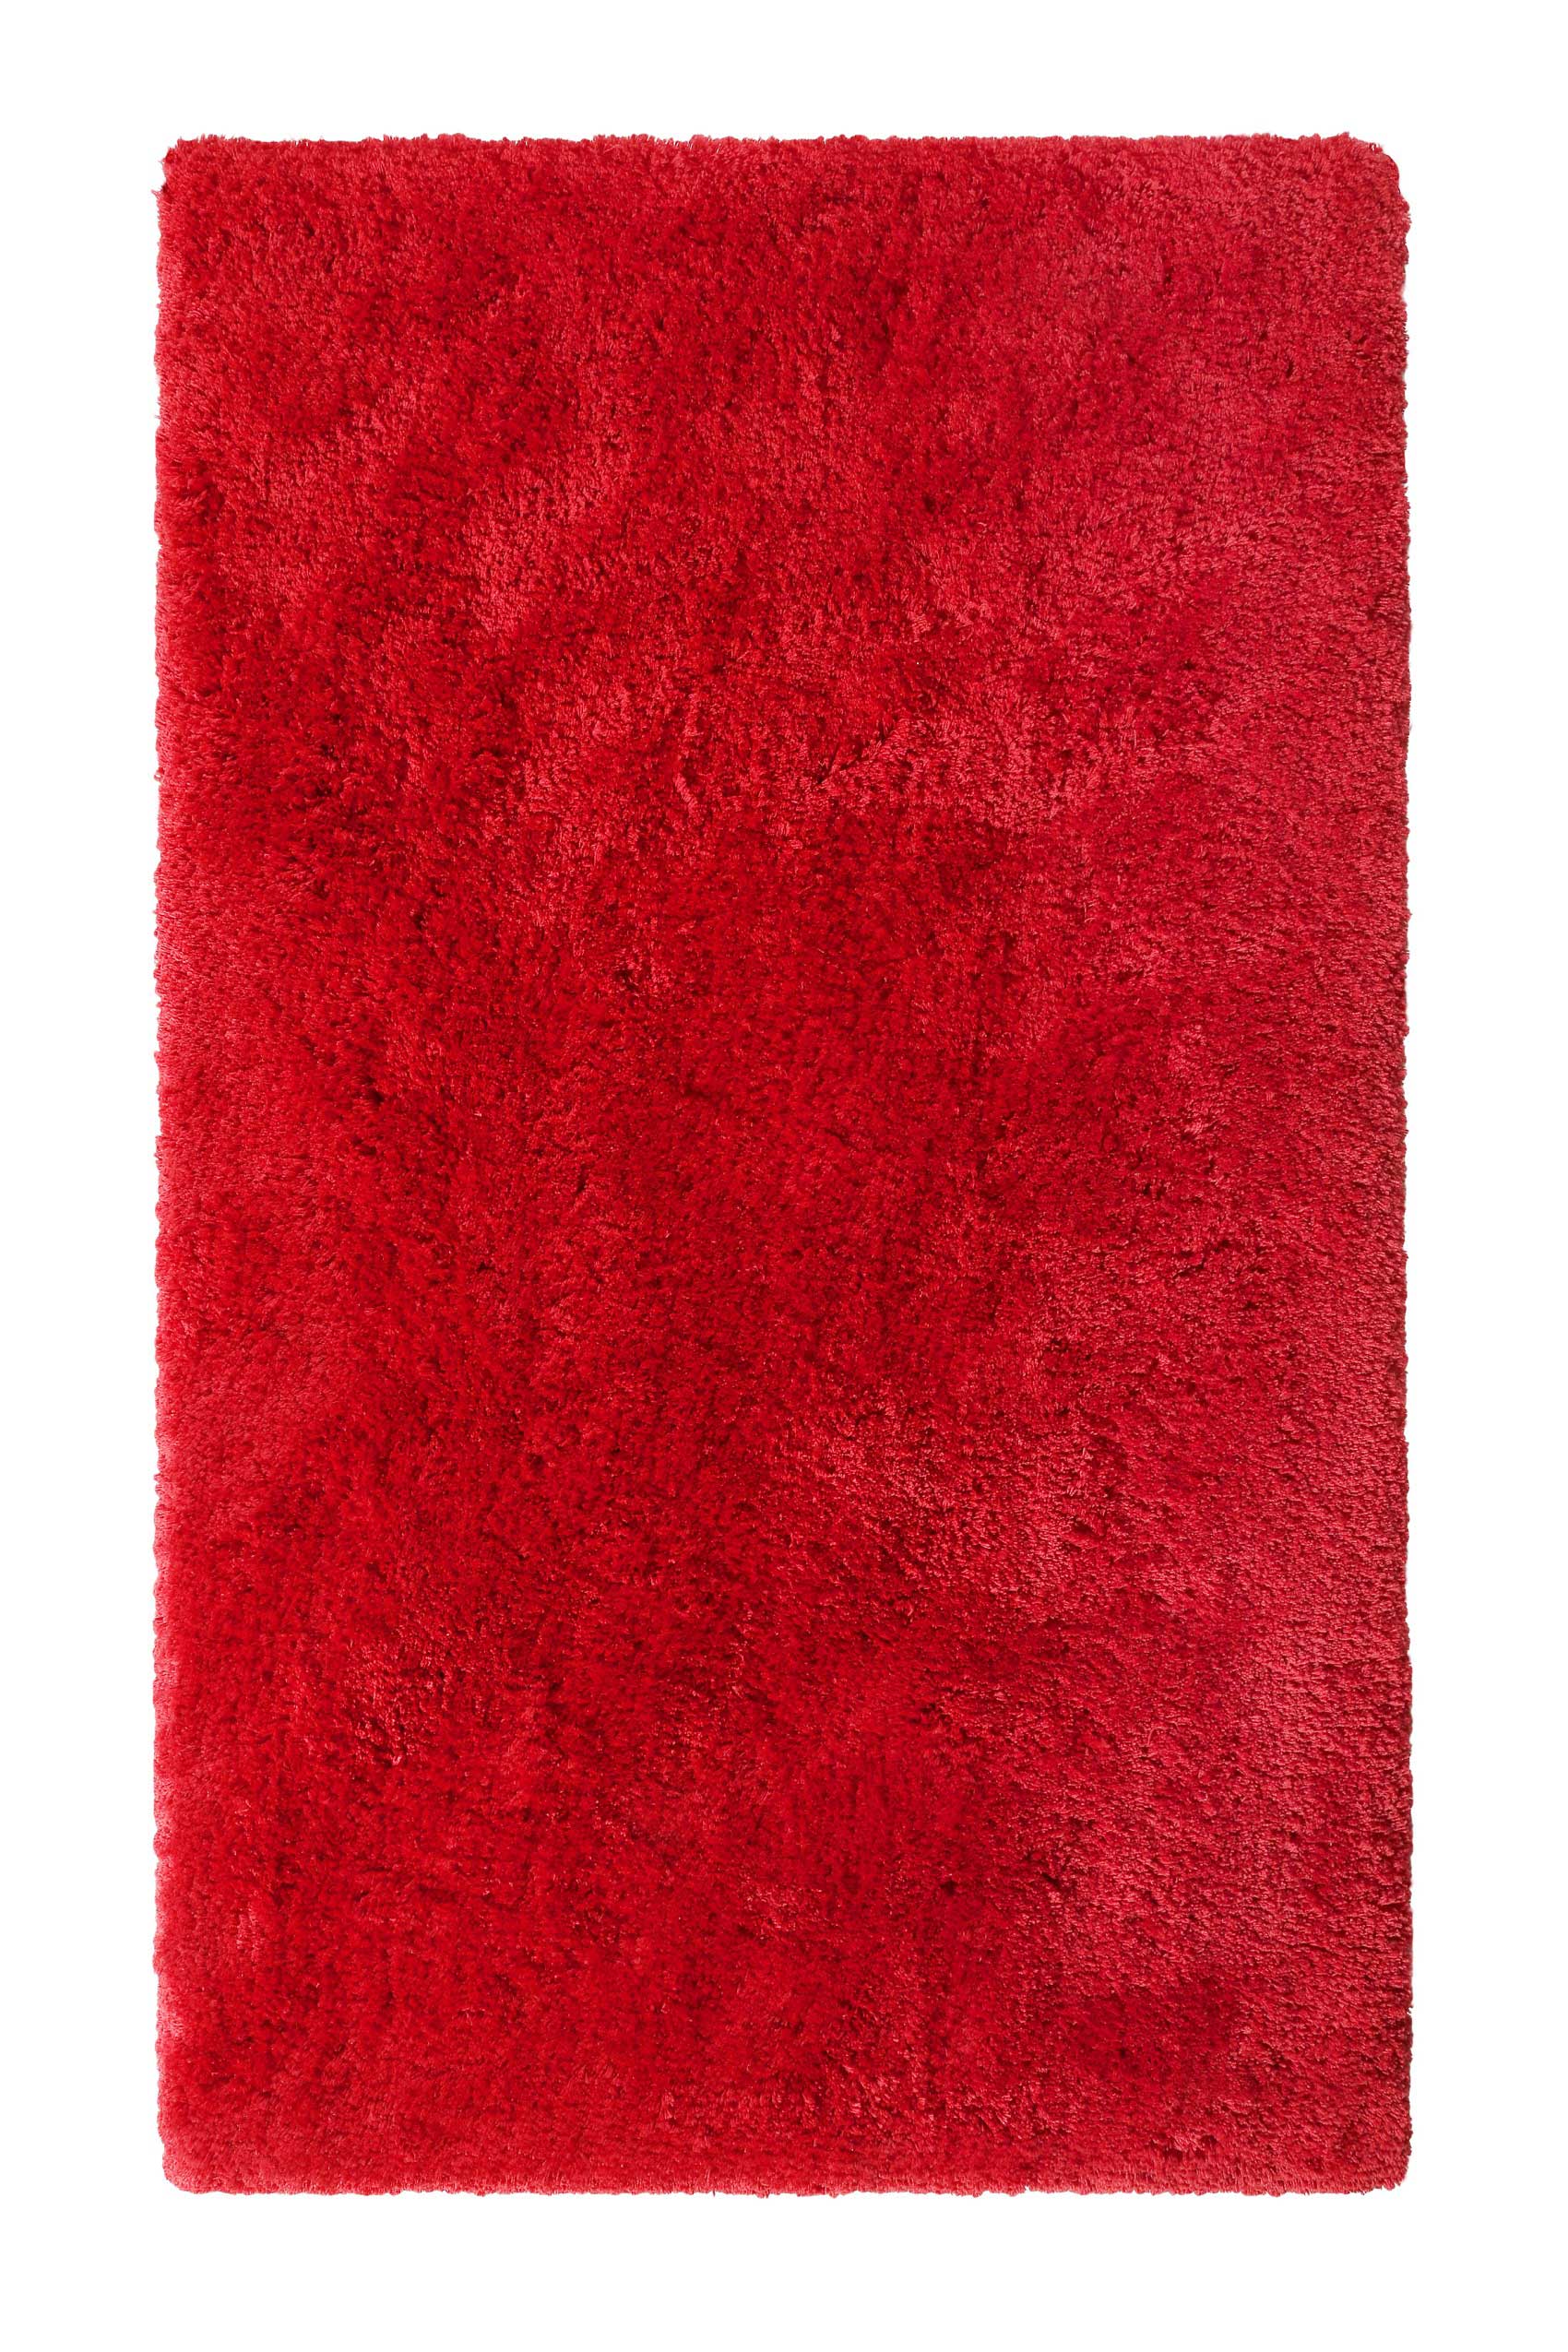 Tappeto da bagno in microfibra antiscivolo Rosso 60x100 Porto